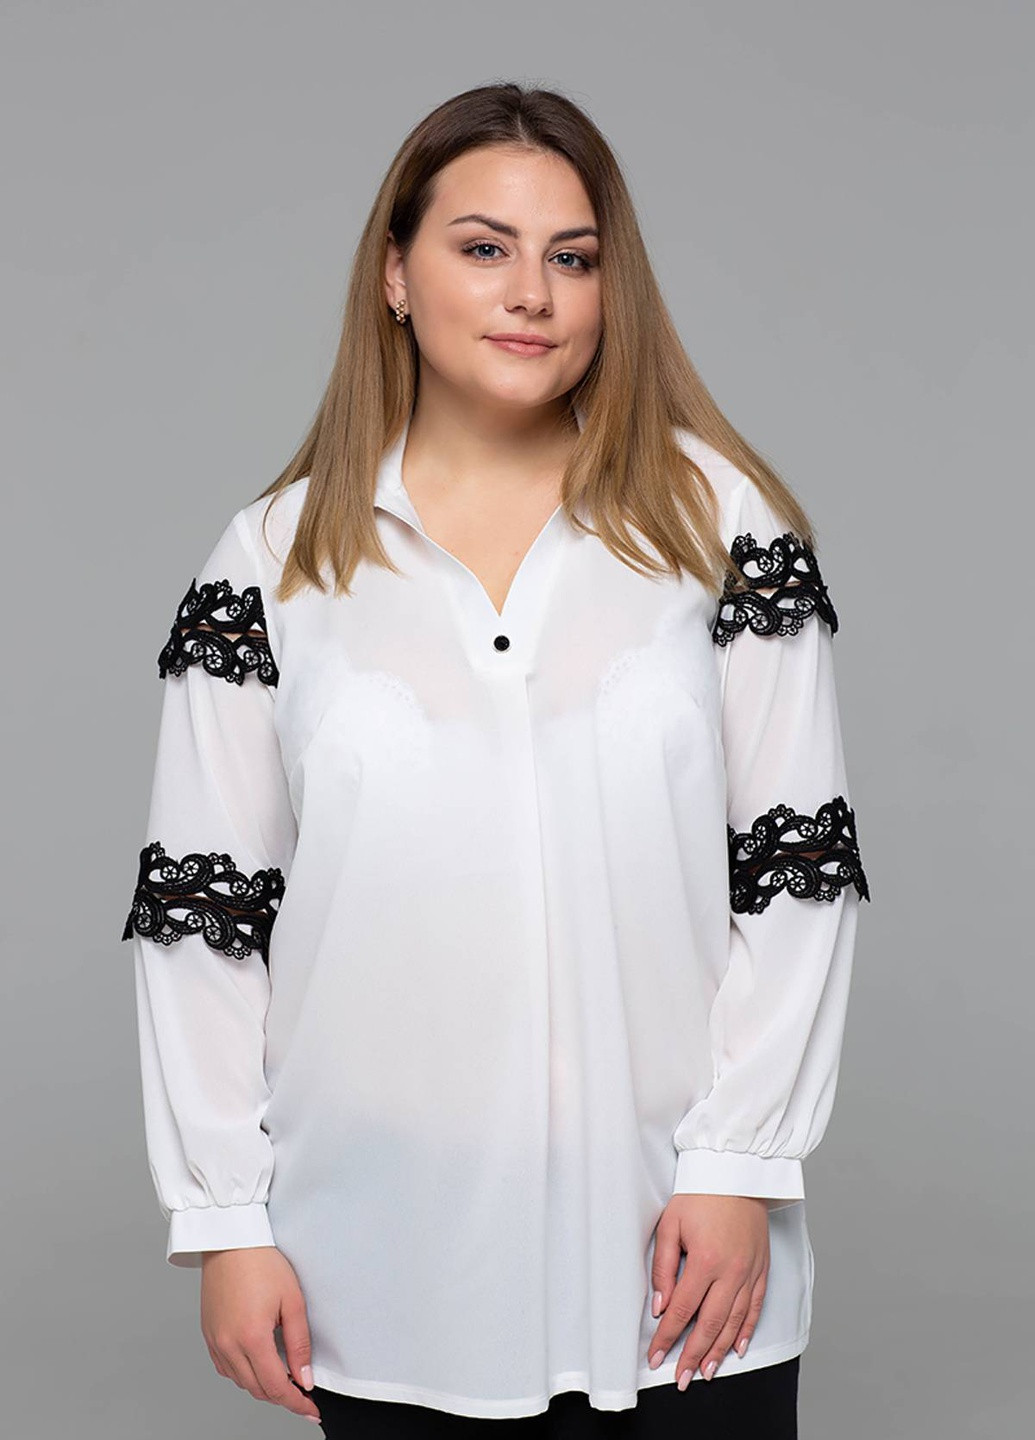 Біла ошатна блуза з мереживом андреа біла Tatiana